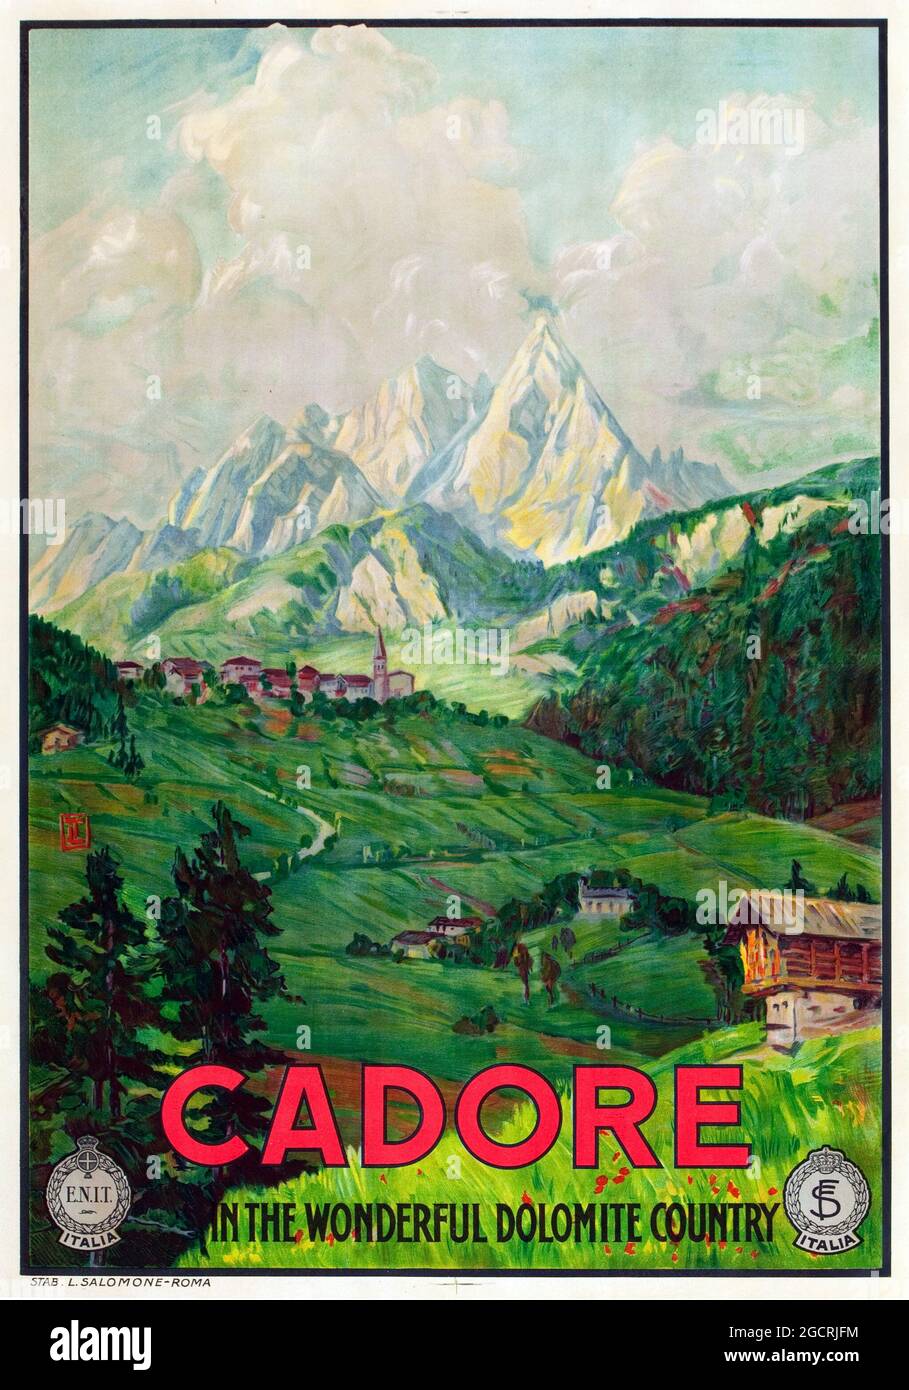 Poster Vintage Travel Italia. Pubblicità retrò. Cadore, Dolomite, Italy Travel Poster (ENIT, fine anni Venti / inizio anni 1930). Foto Stock